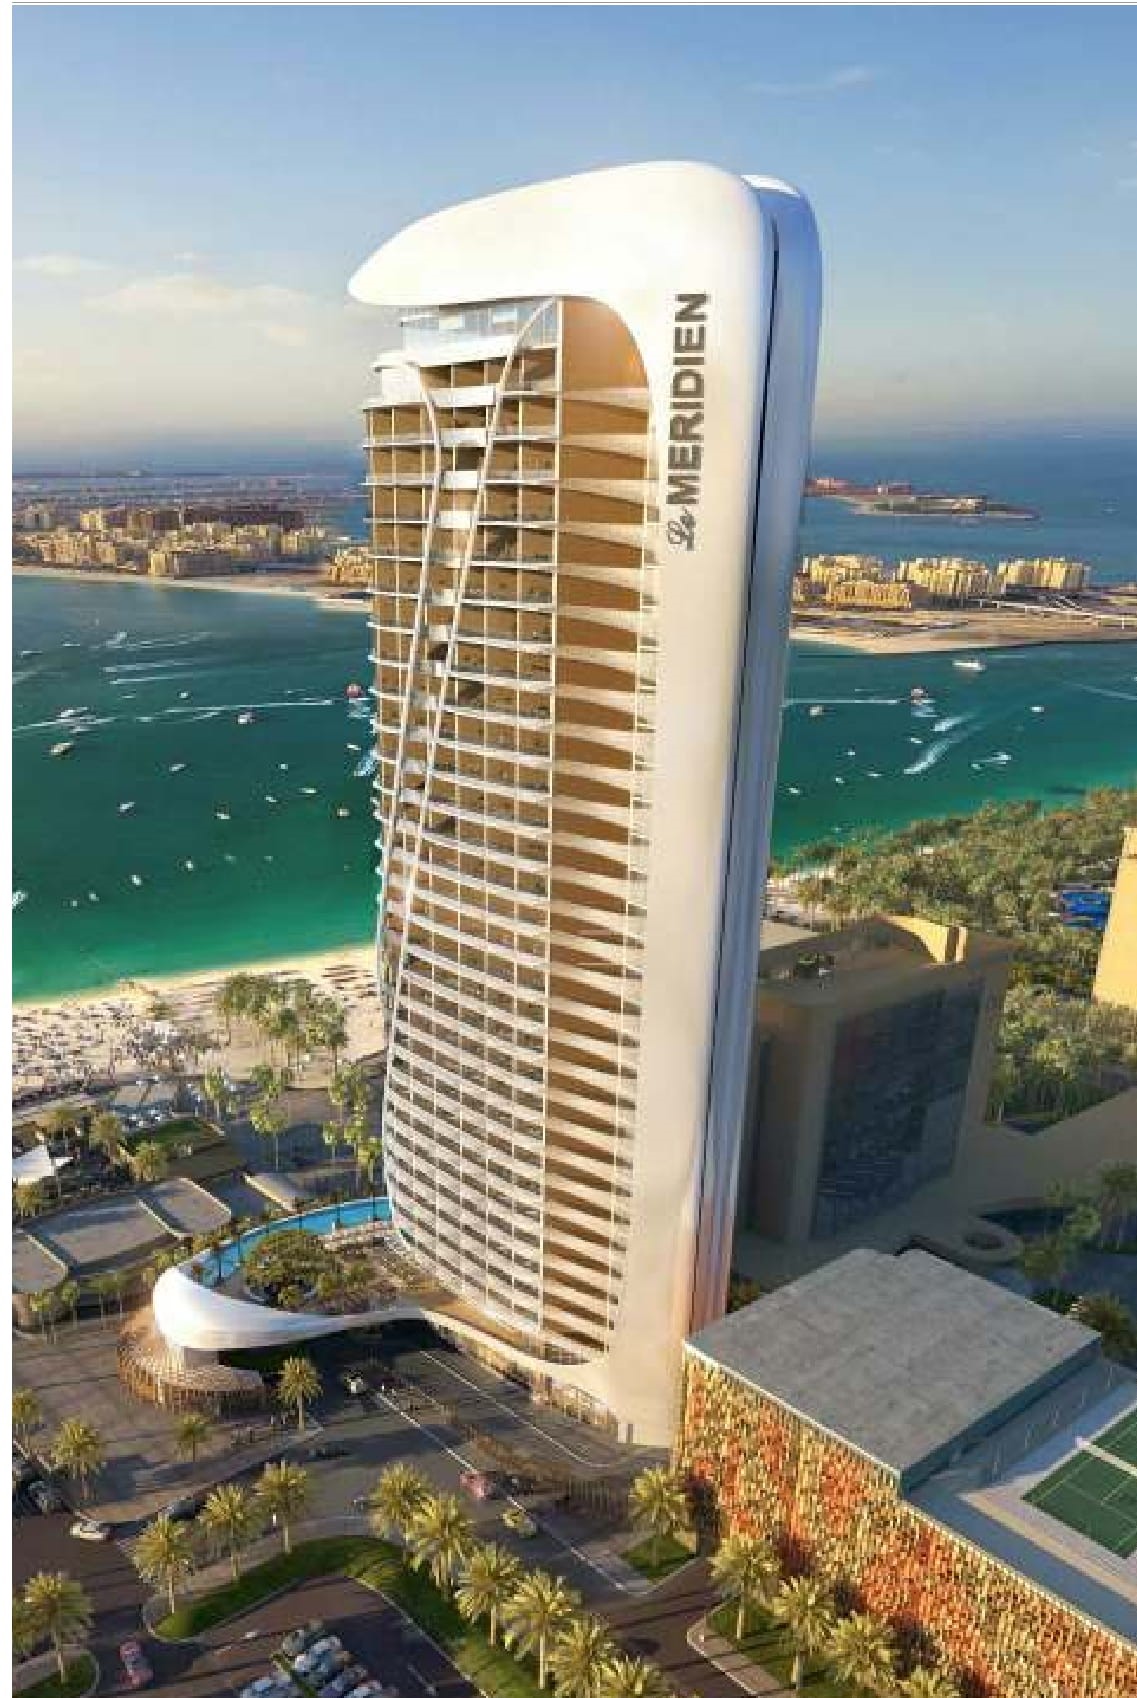 Le Meridien Hotel Expansion Dubai